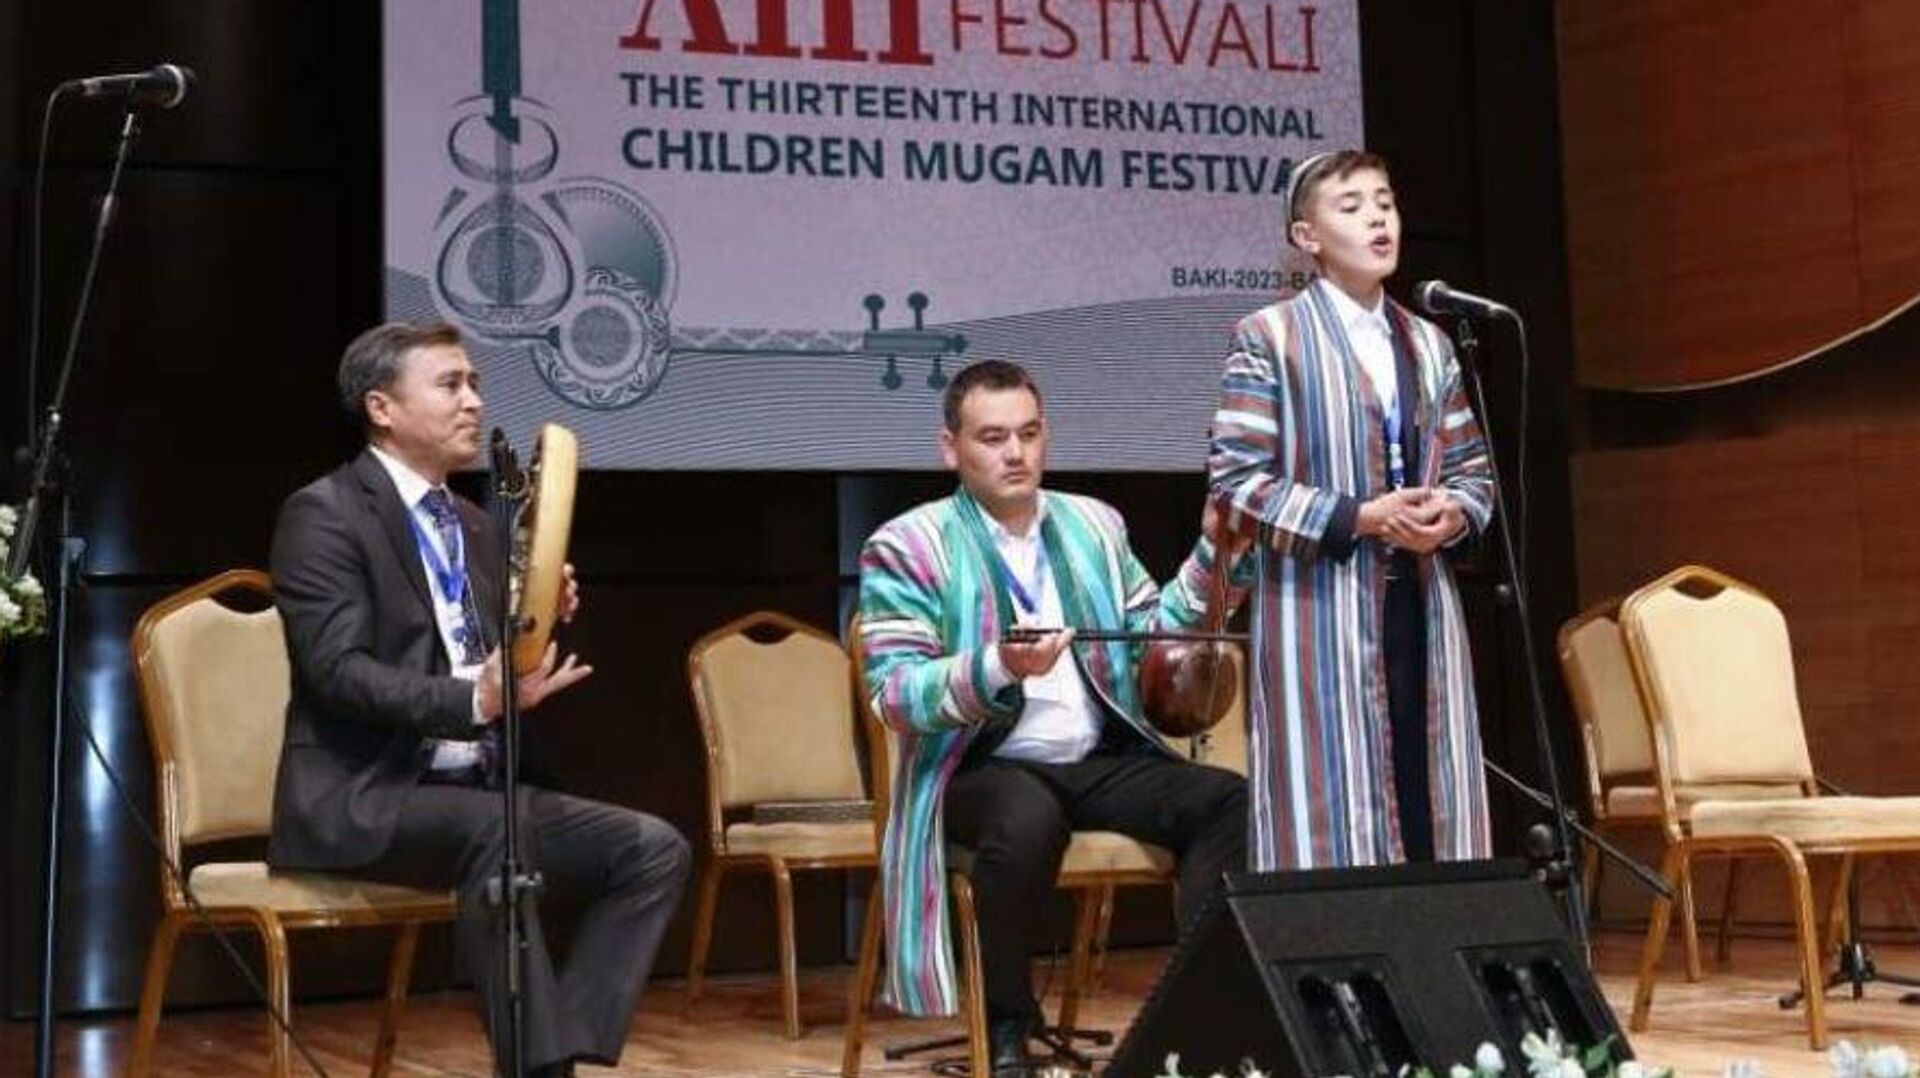 Uzbekistansi zanyali prizovie mesta na Mejdunarodnom festivale v Baku - Sputnik O‘zbekiston, 1920, 24.05.2023